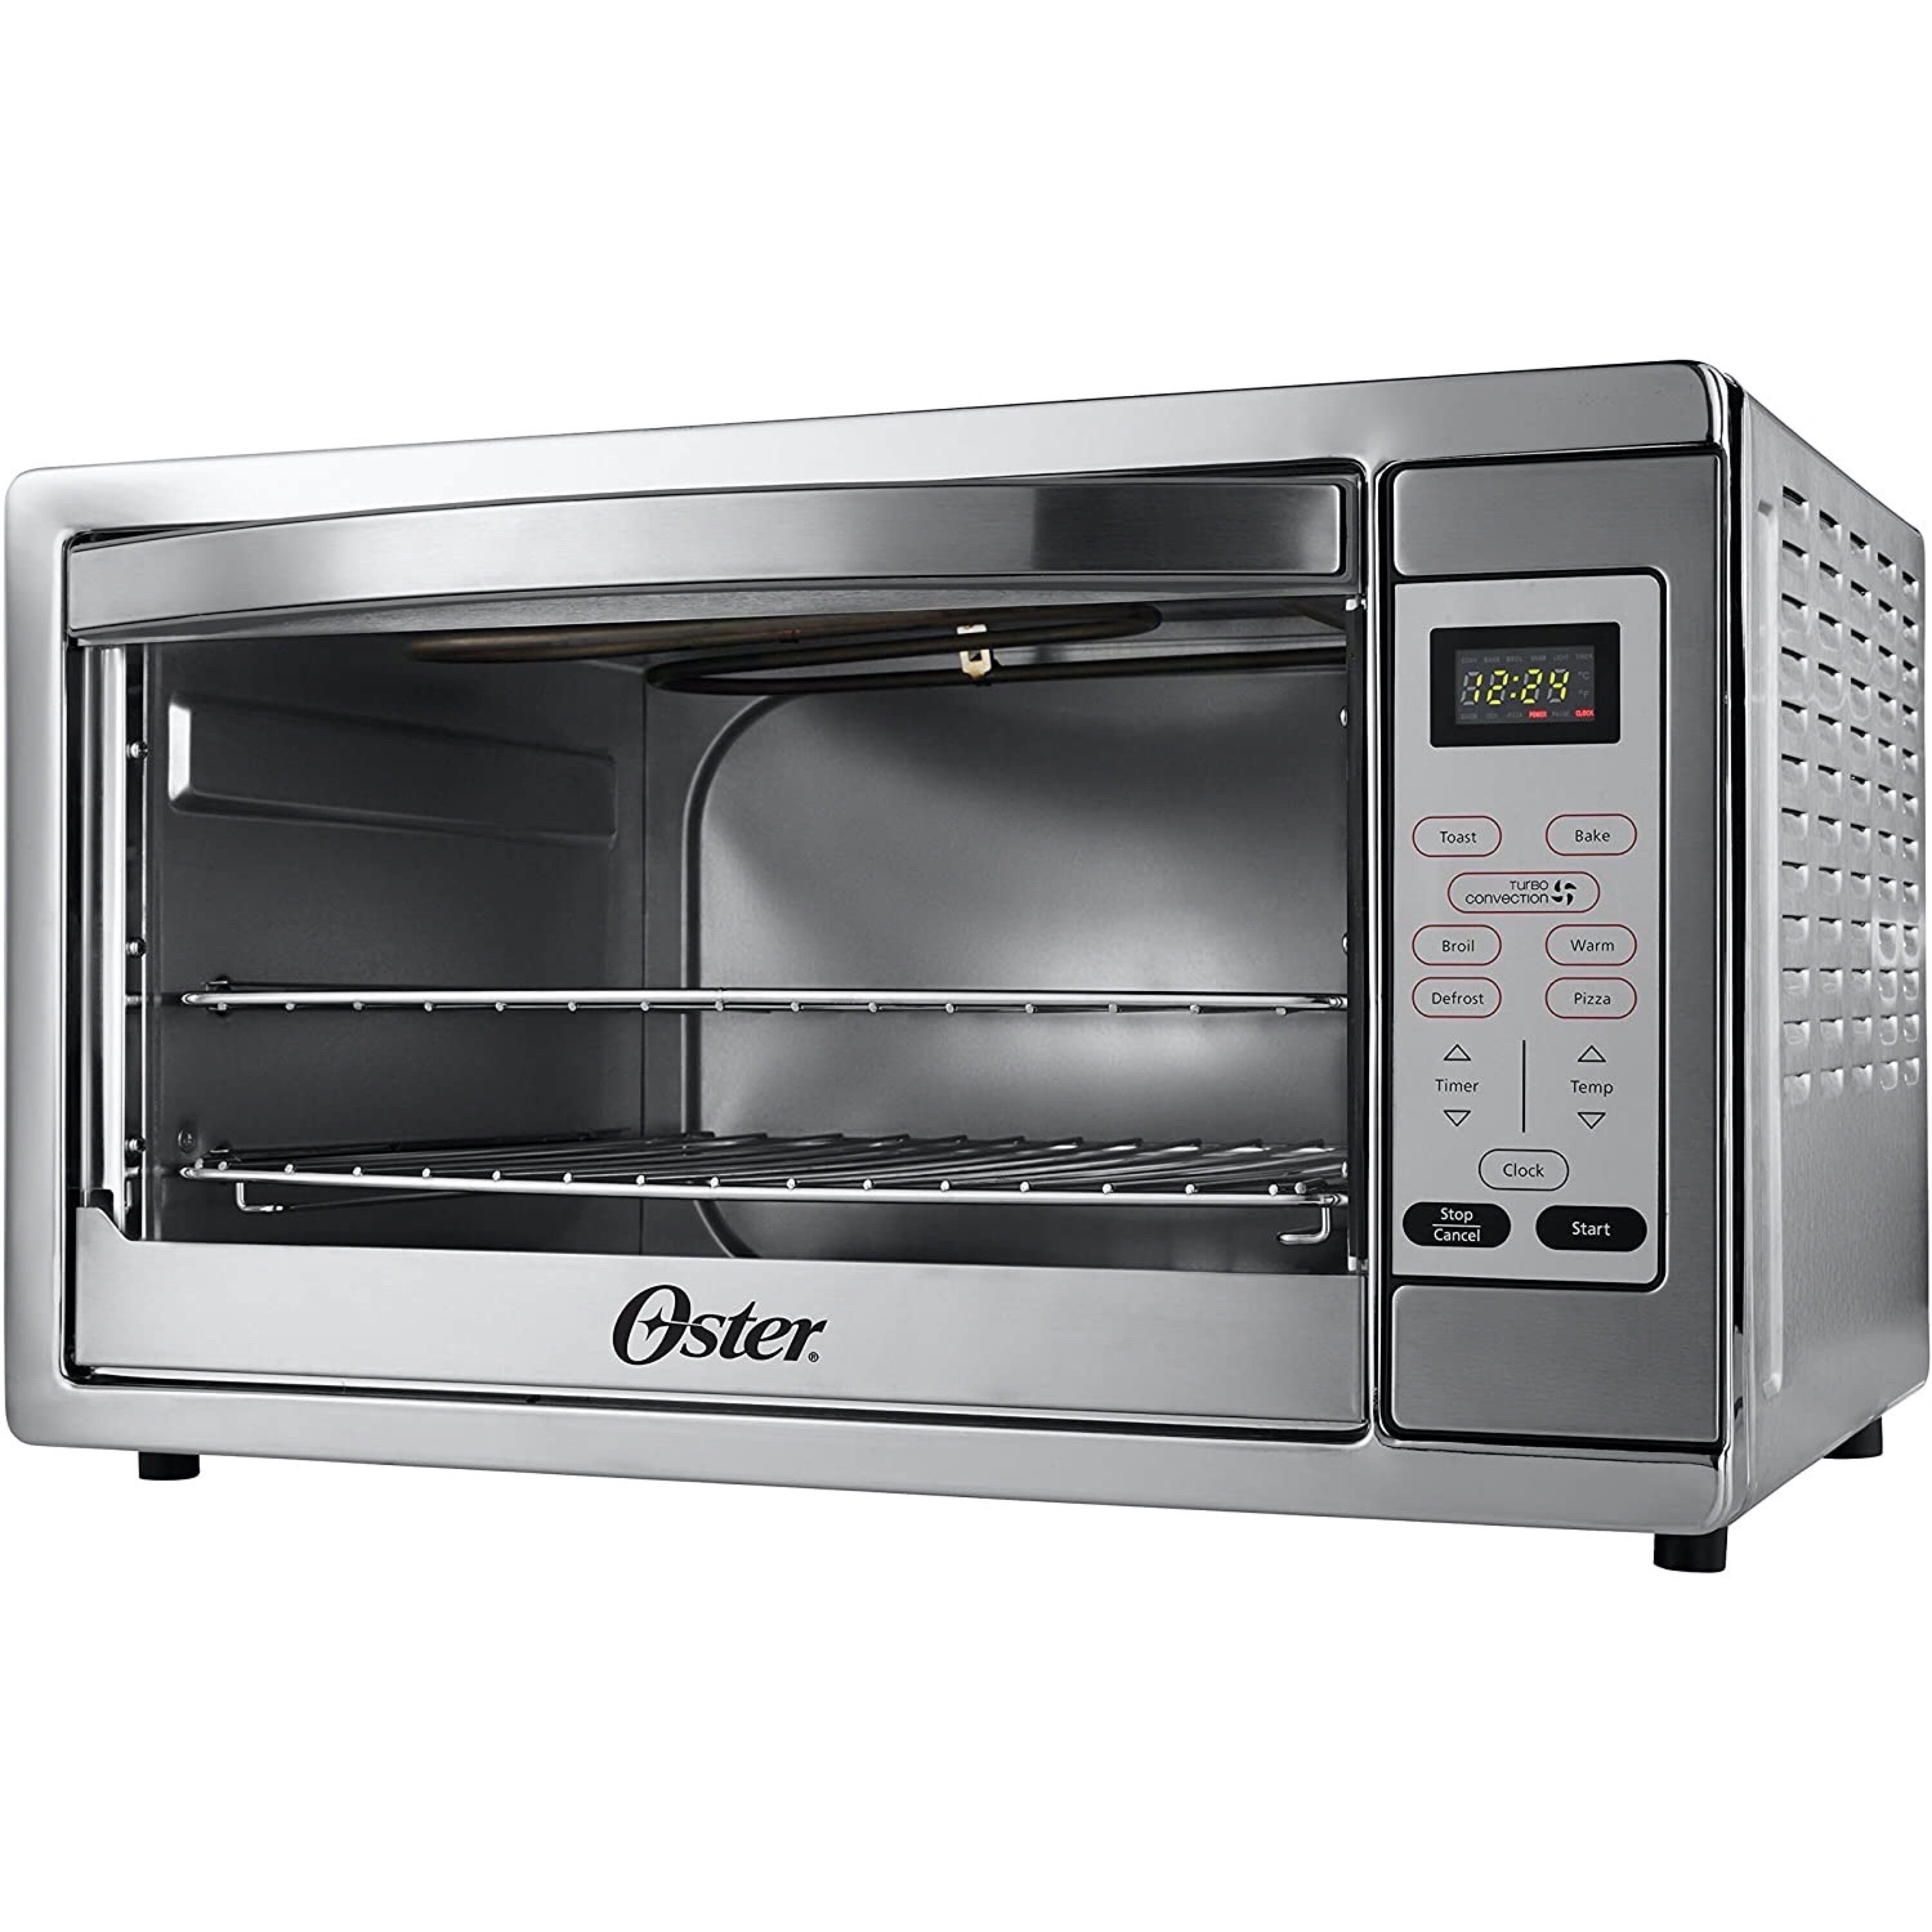 https://assets.wfcdn.com/im/00202874/compr-r85/1428/142839115/oster-extra-large-digital-oven.jpg